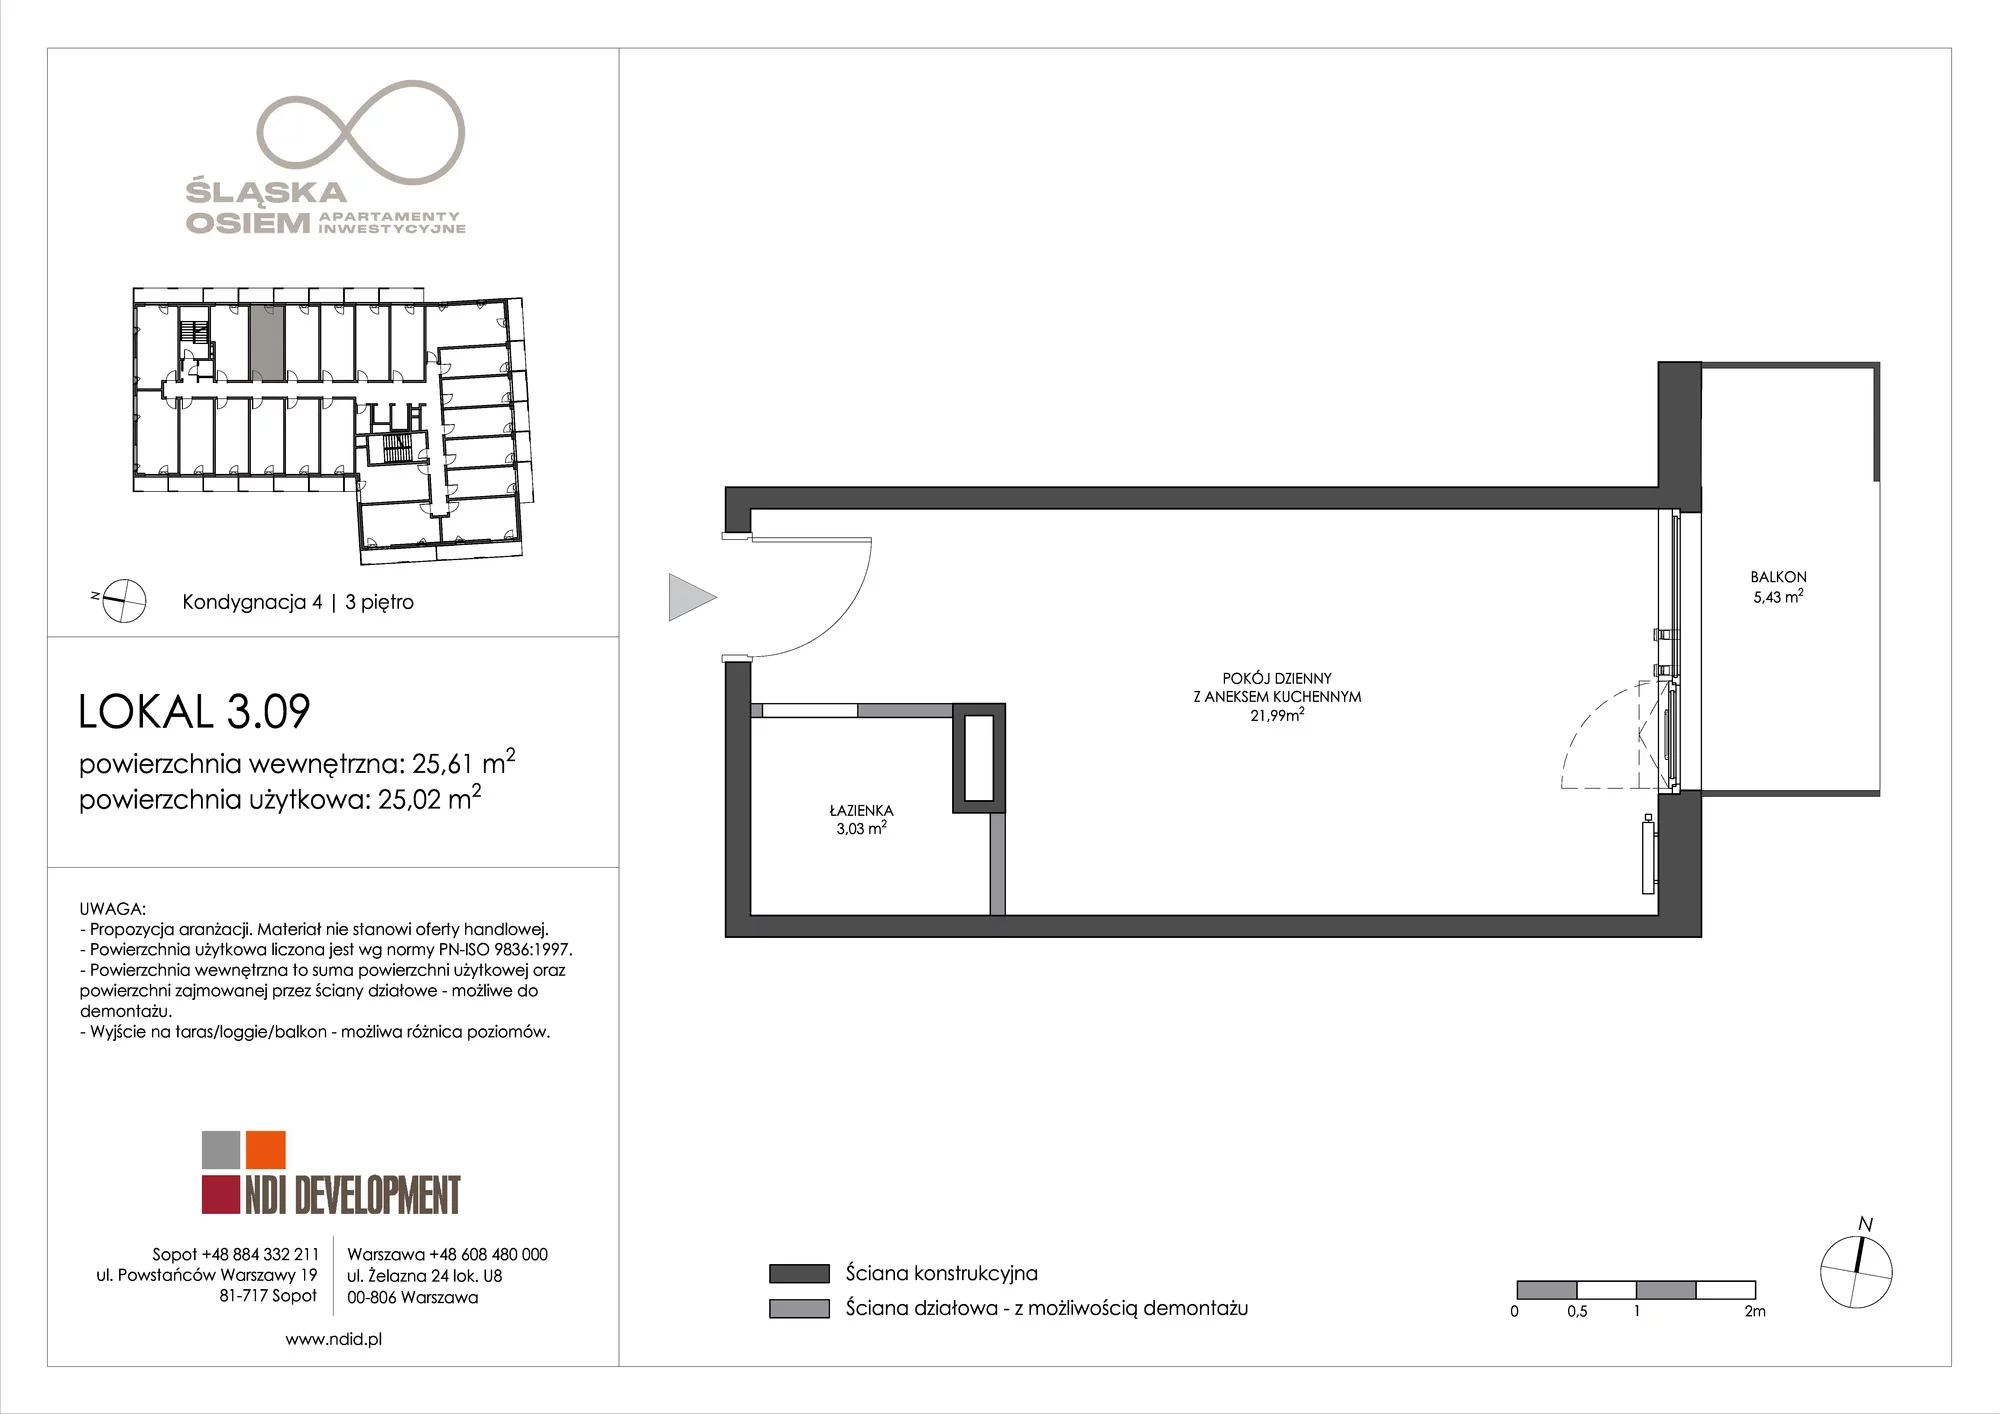 Apartament inwestycyjny 25,61 m², piętro 3, oferta nr 3.09, Śląska Osiem, Gdańsk, Przymorze, ul. Śląska 8